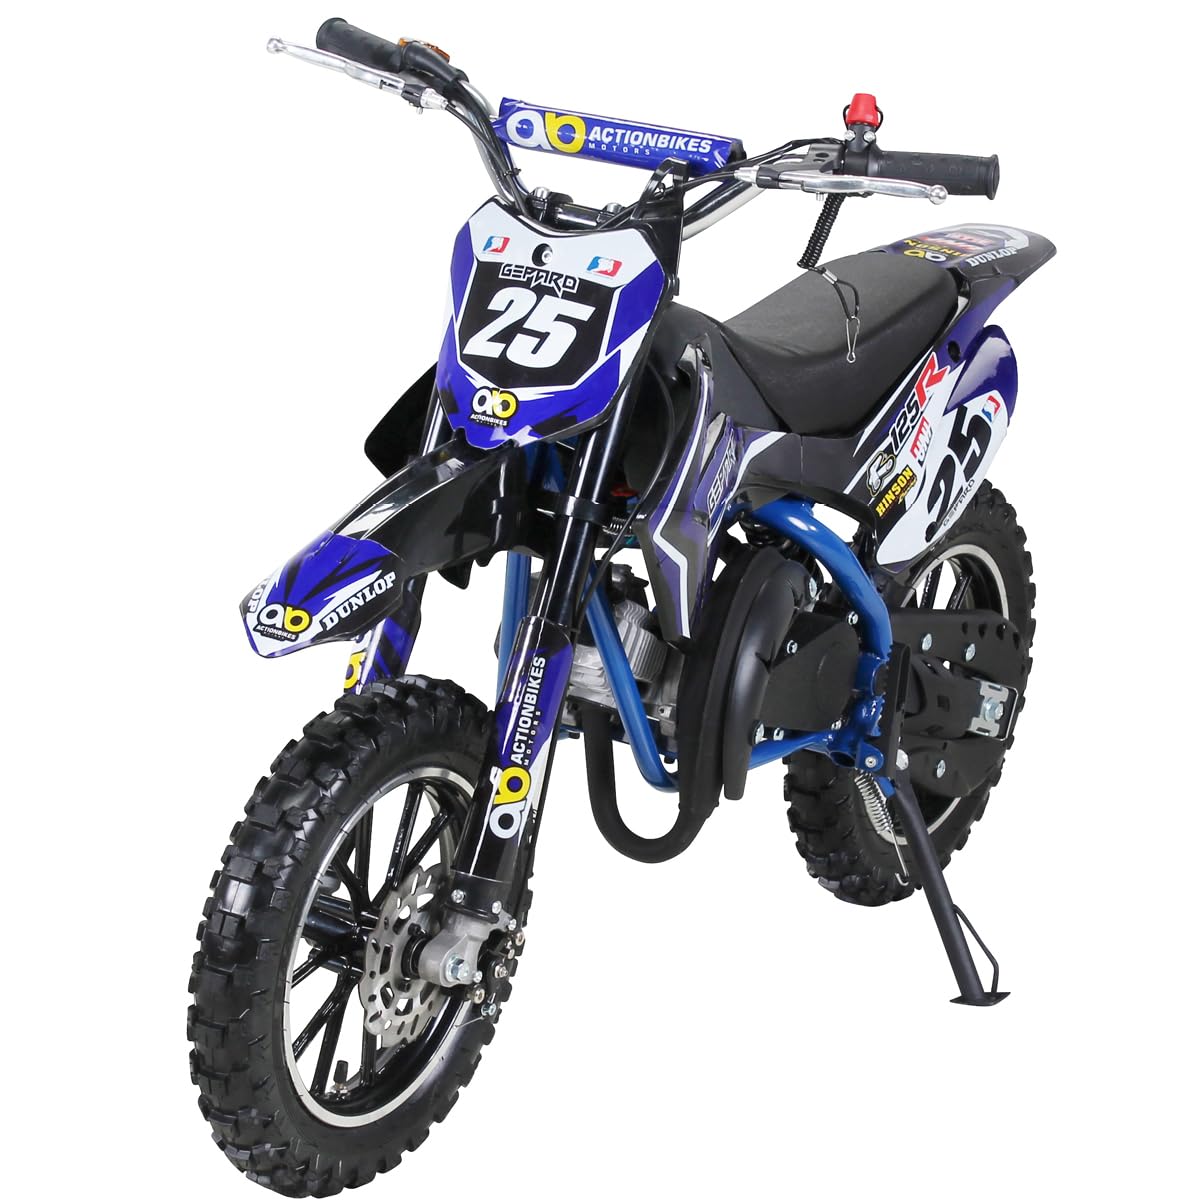 Actionbikes Motors Kinder Crossbike Gepard 2-Takt 49ccm | Bis 35 Km/h - 2 Liter Tank - Tuning Kupplung - Easy Pull Start - Scheibenbremsen - Motorrad - Motocross - Dirtbike - Enduro (Blau) von Actionbikes Motors